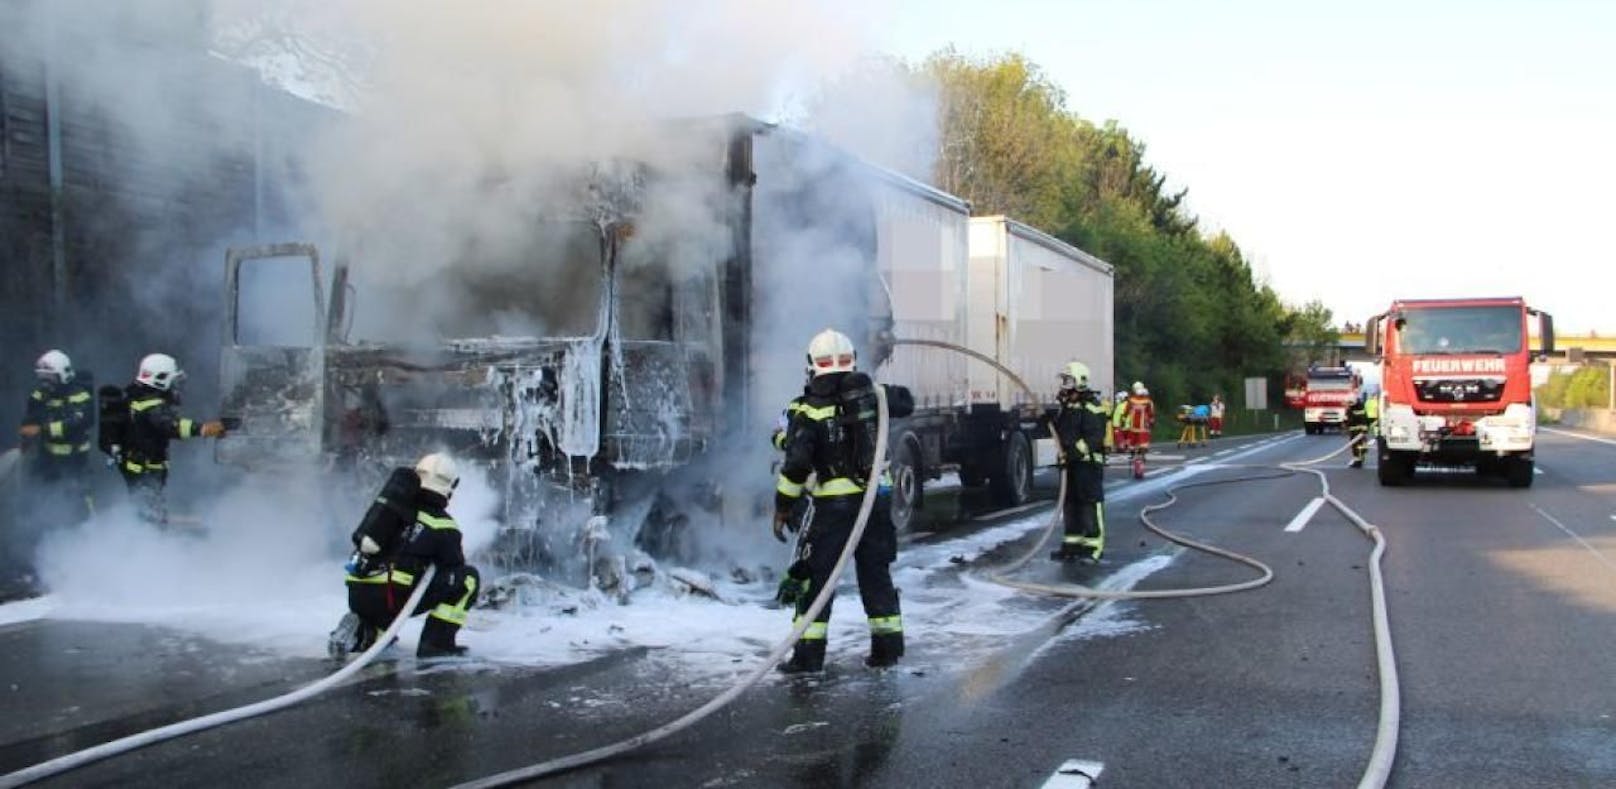 Lenker rettete sich aus brennendem Lastwagen